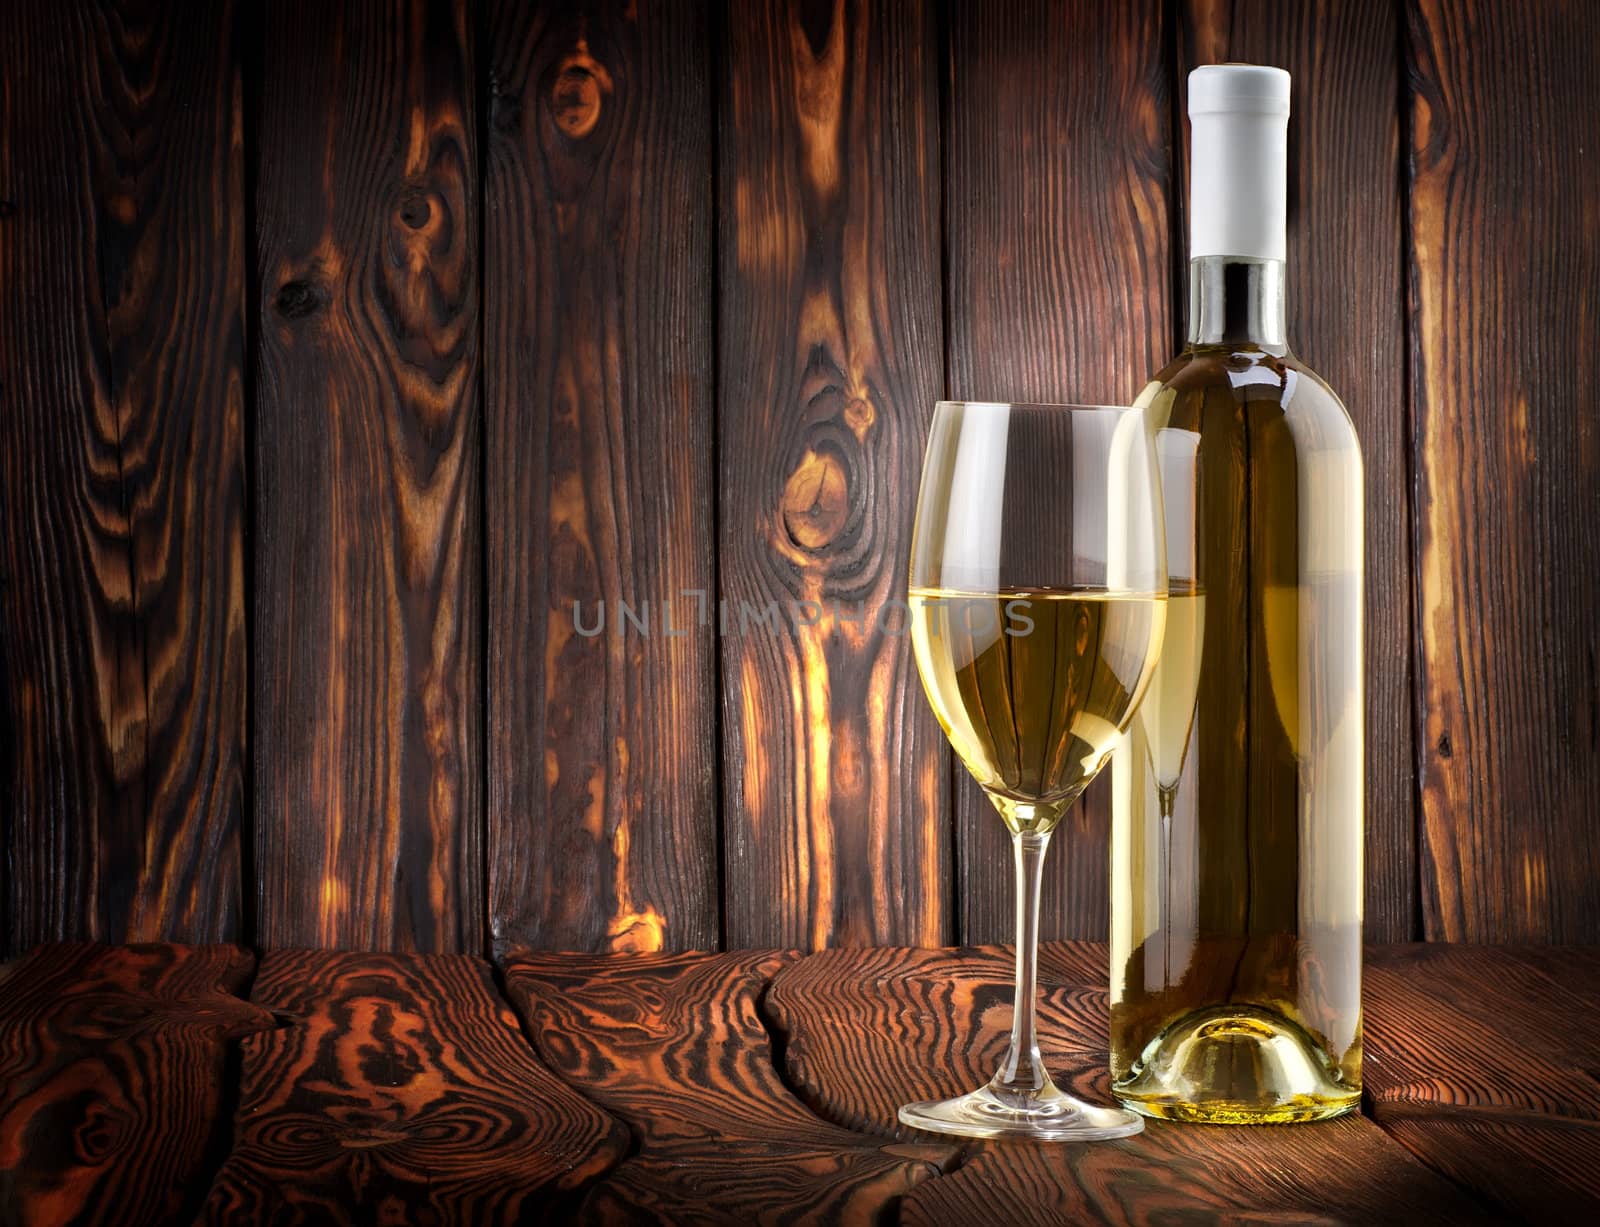 Desser white wine on a wooden background